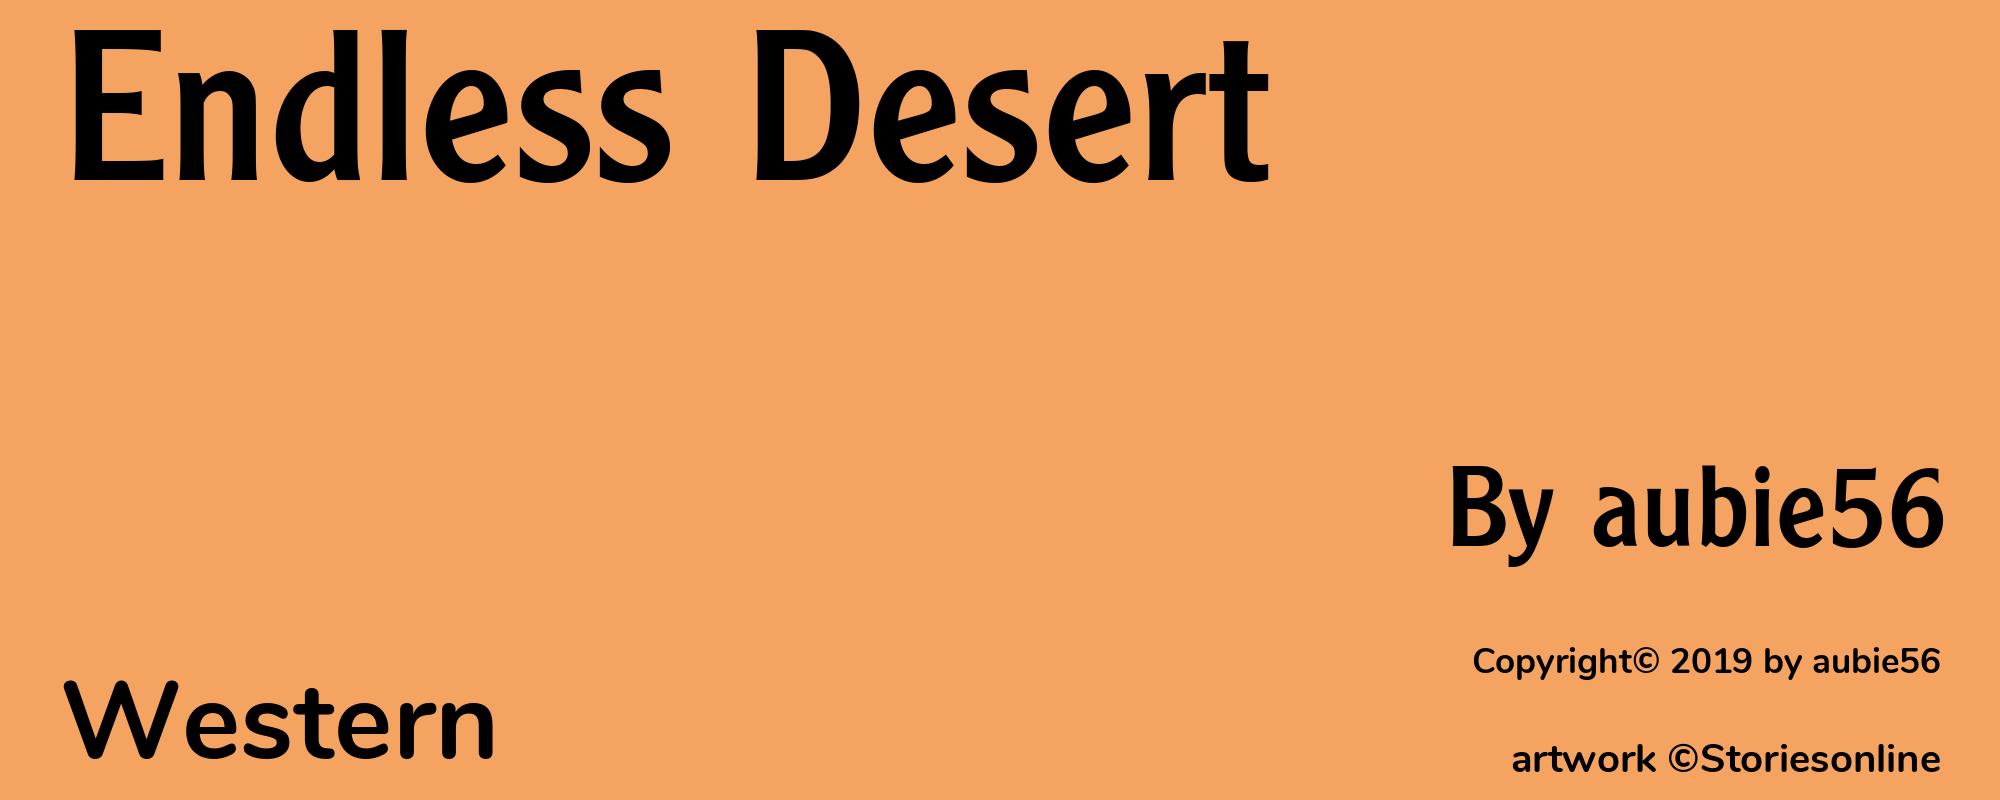 Endless Desert - Cover